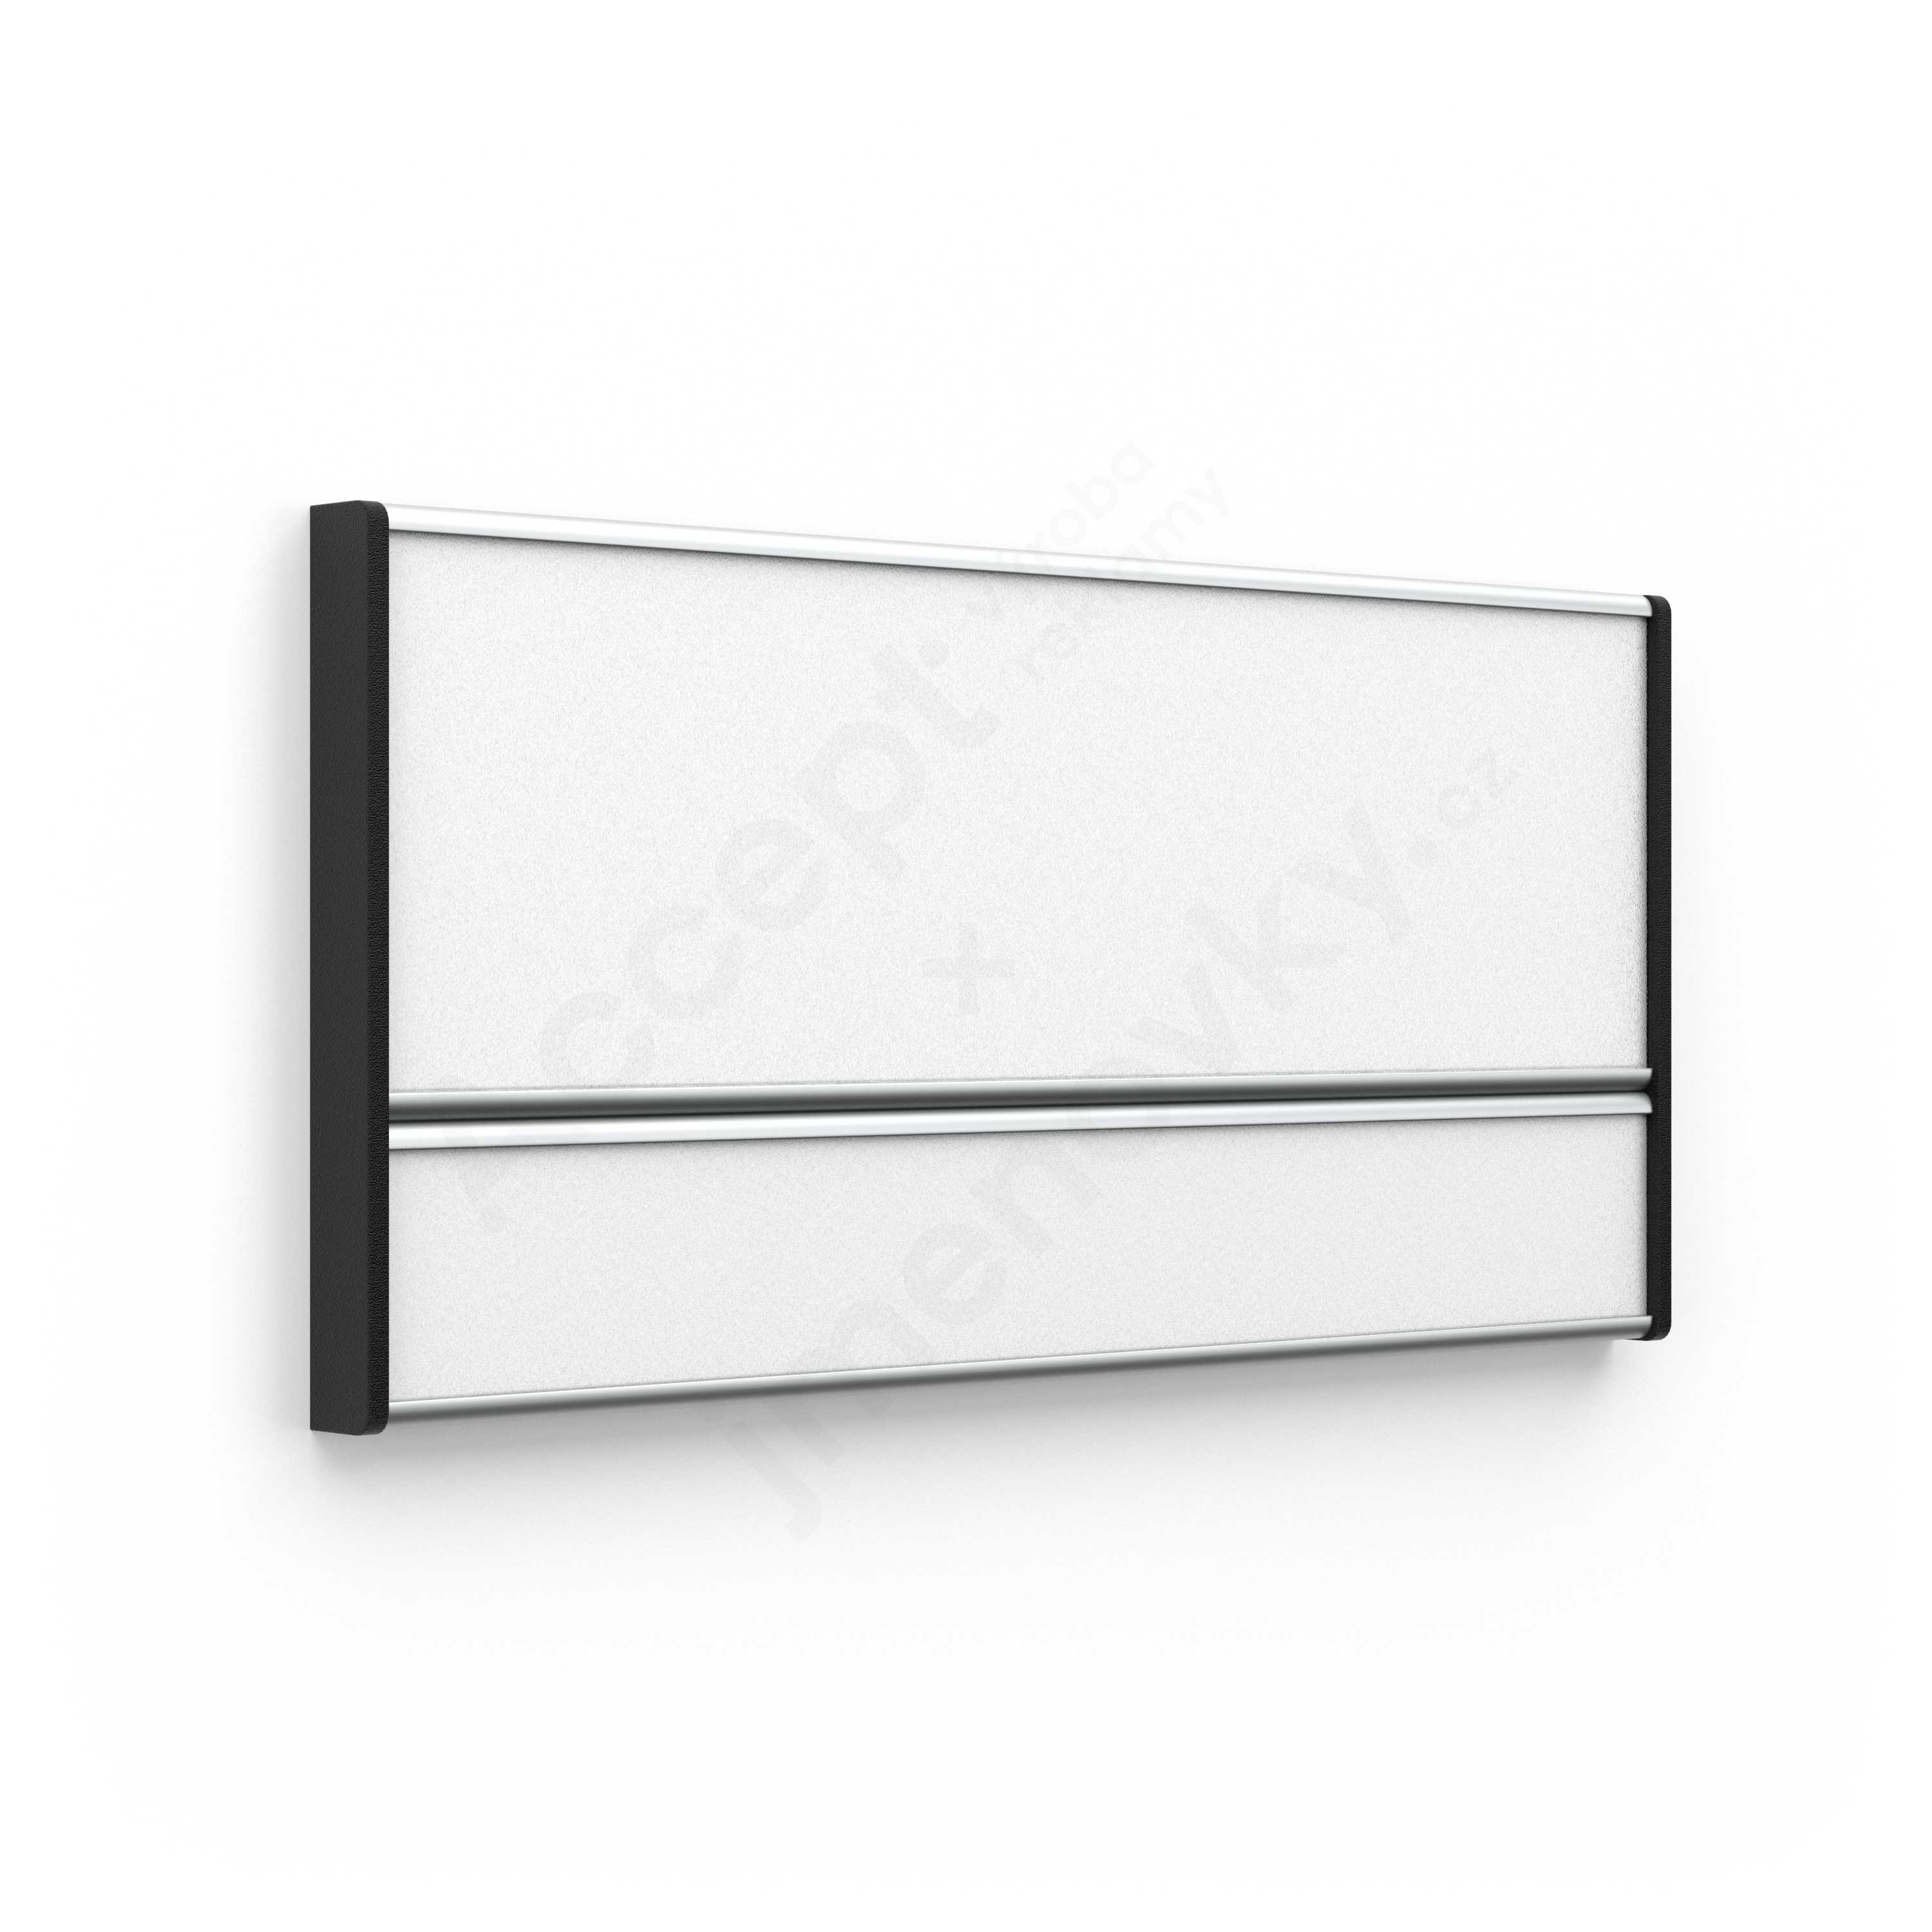 Dveřní tabulka ACS (zásuvný systém, 187 × 93 mm)